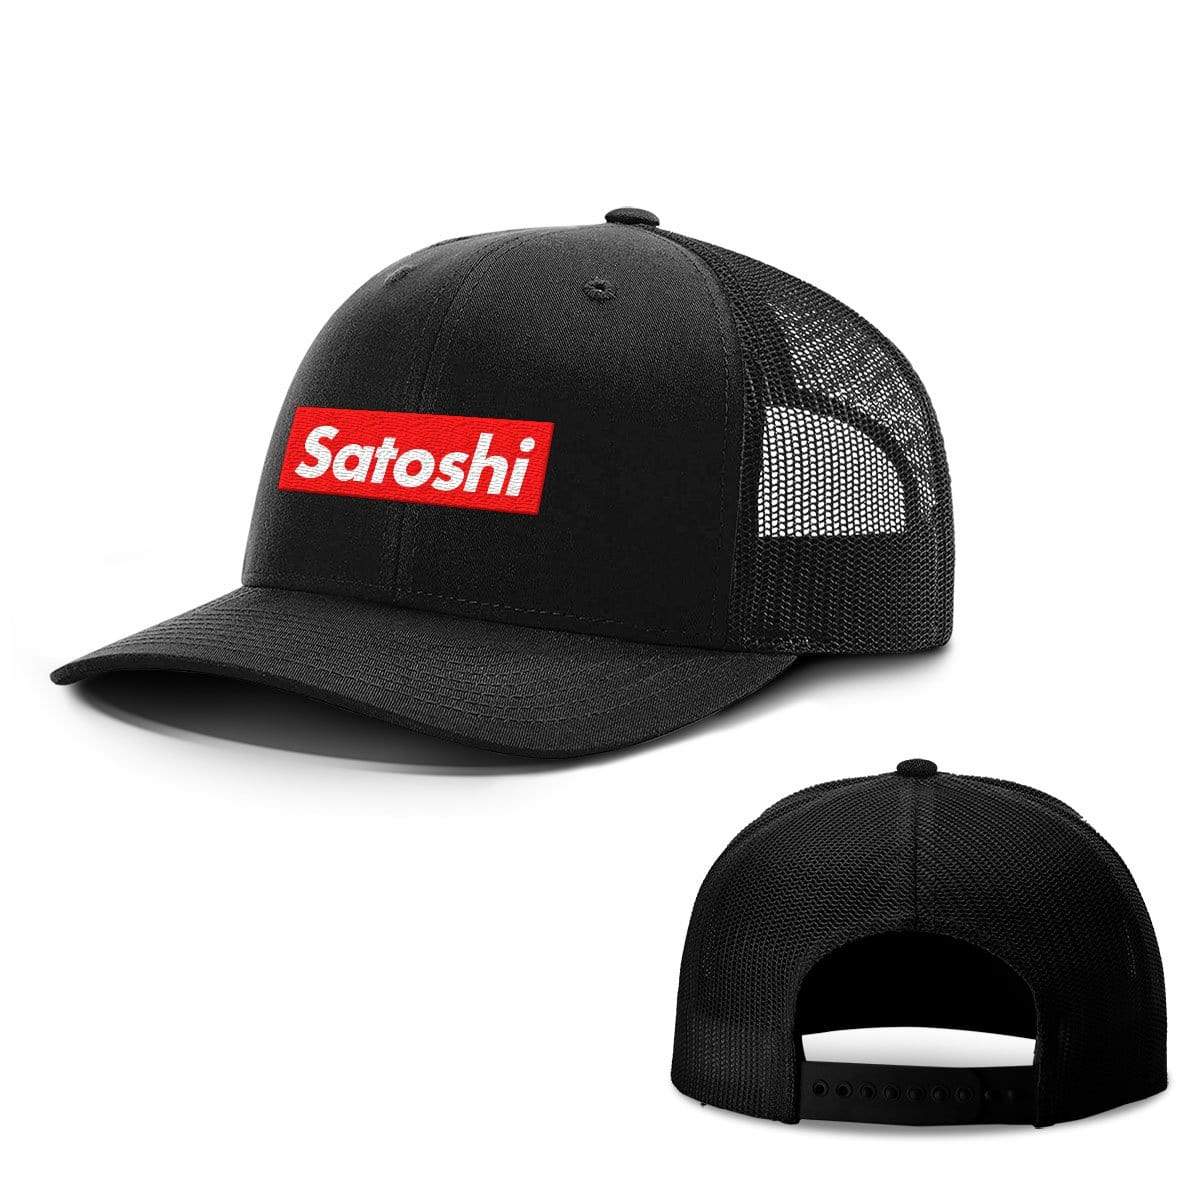 SunFrog-Busted Hats Snapback / Full Black / One Size Satoshi Hats